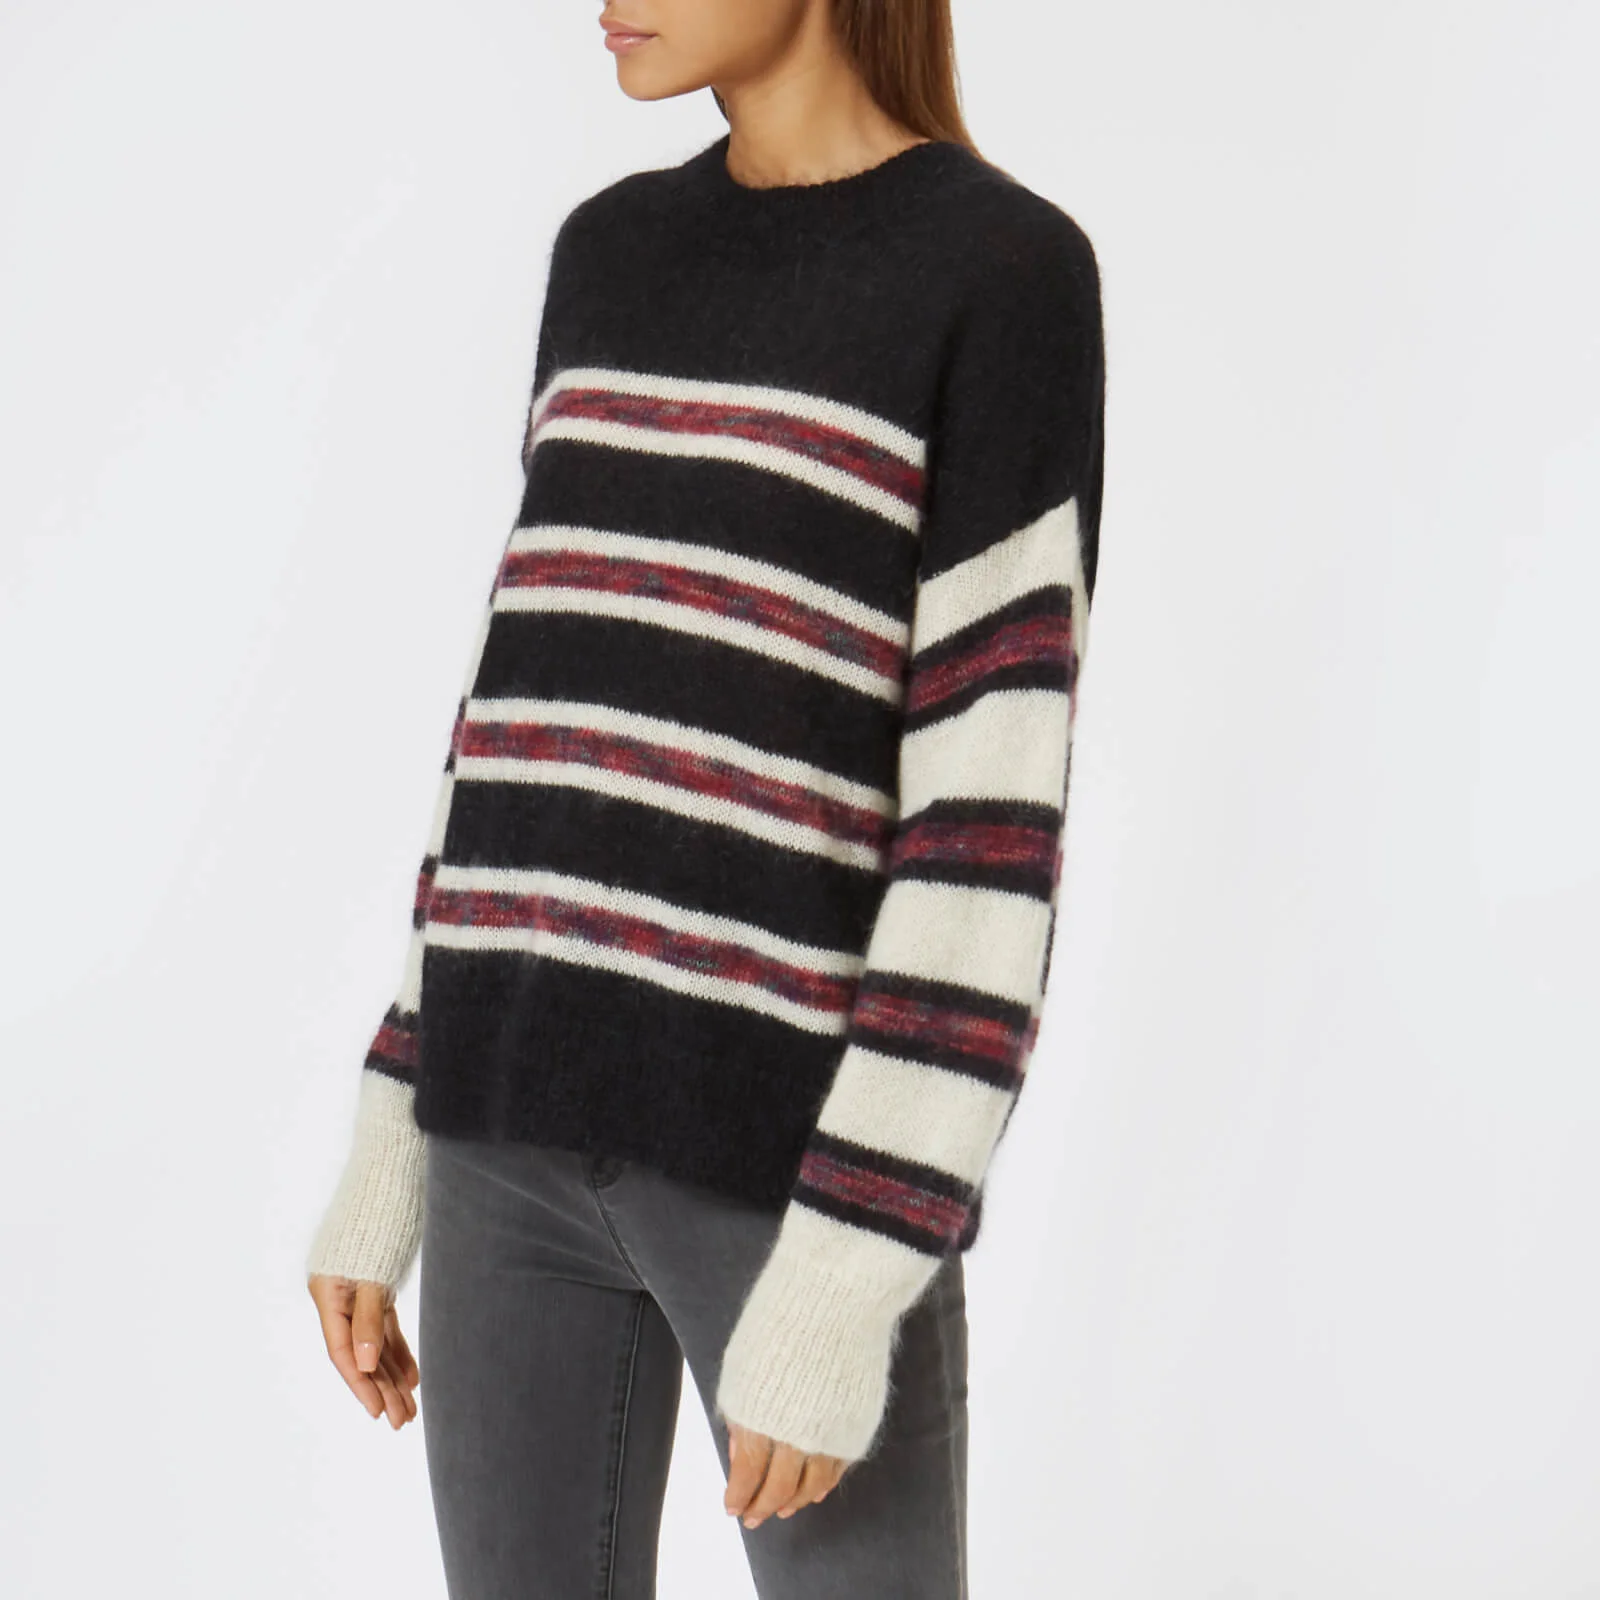 Marant Etoile Women's Russell Stripe Sweater - Black/Ecru Image 1